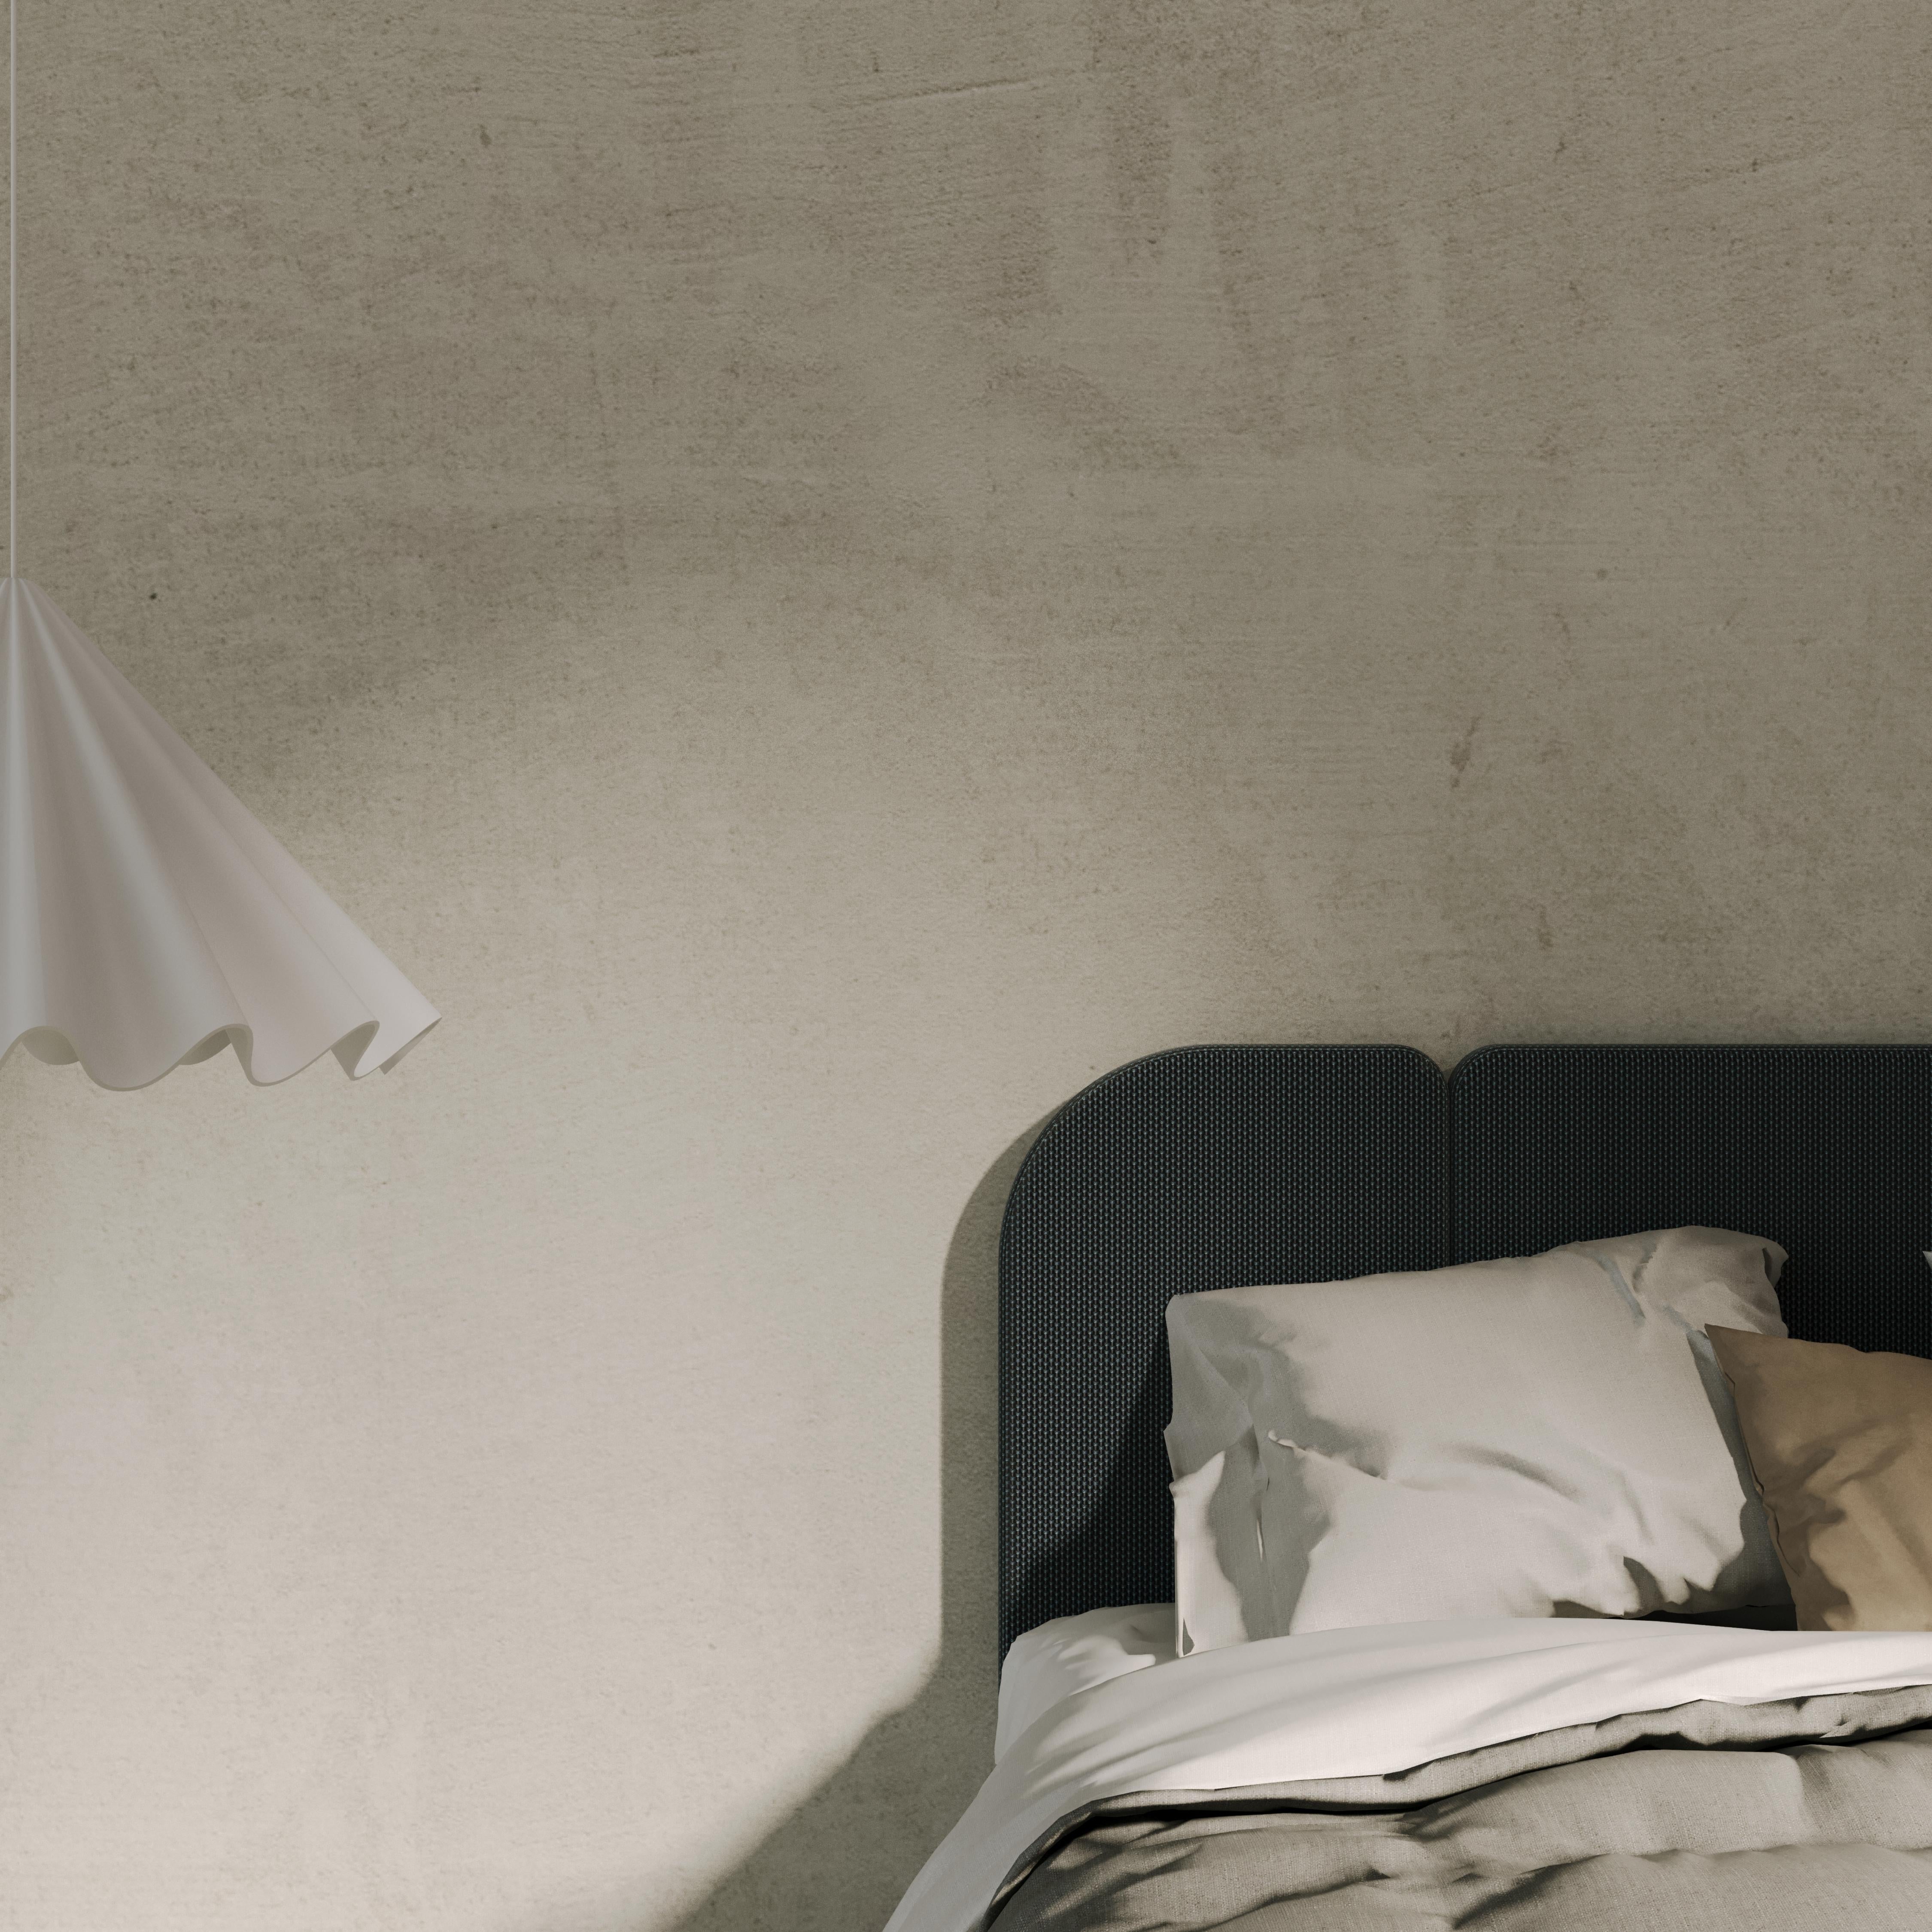 ENYO est une tête de lit en trois modules qui s'adapte à la taille de votre lit. 

Cette version est proposé en Velours Titan, Nobilis autres couleurs sur demande. 

Nos têtes de lit sont fabriquées en France par des tapissiers titrés meilleurs